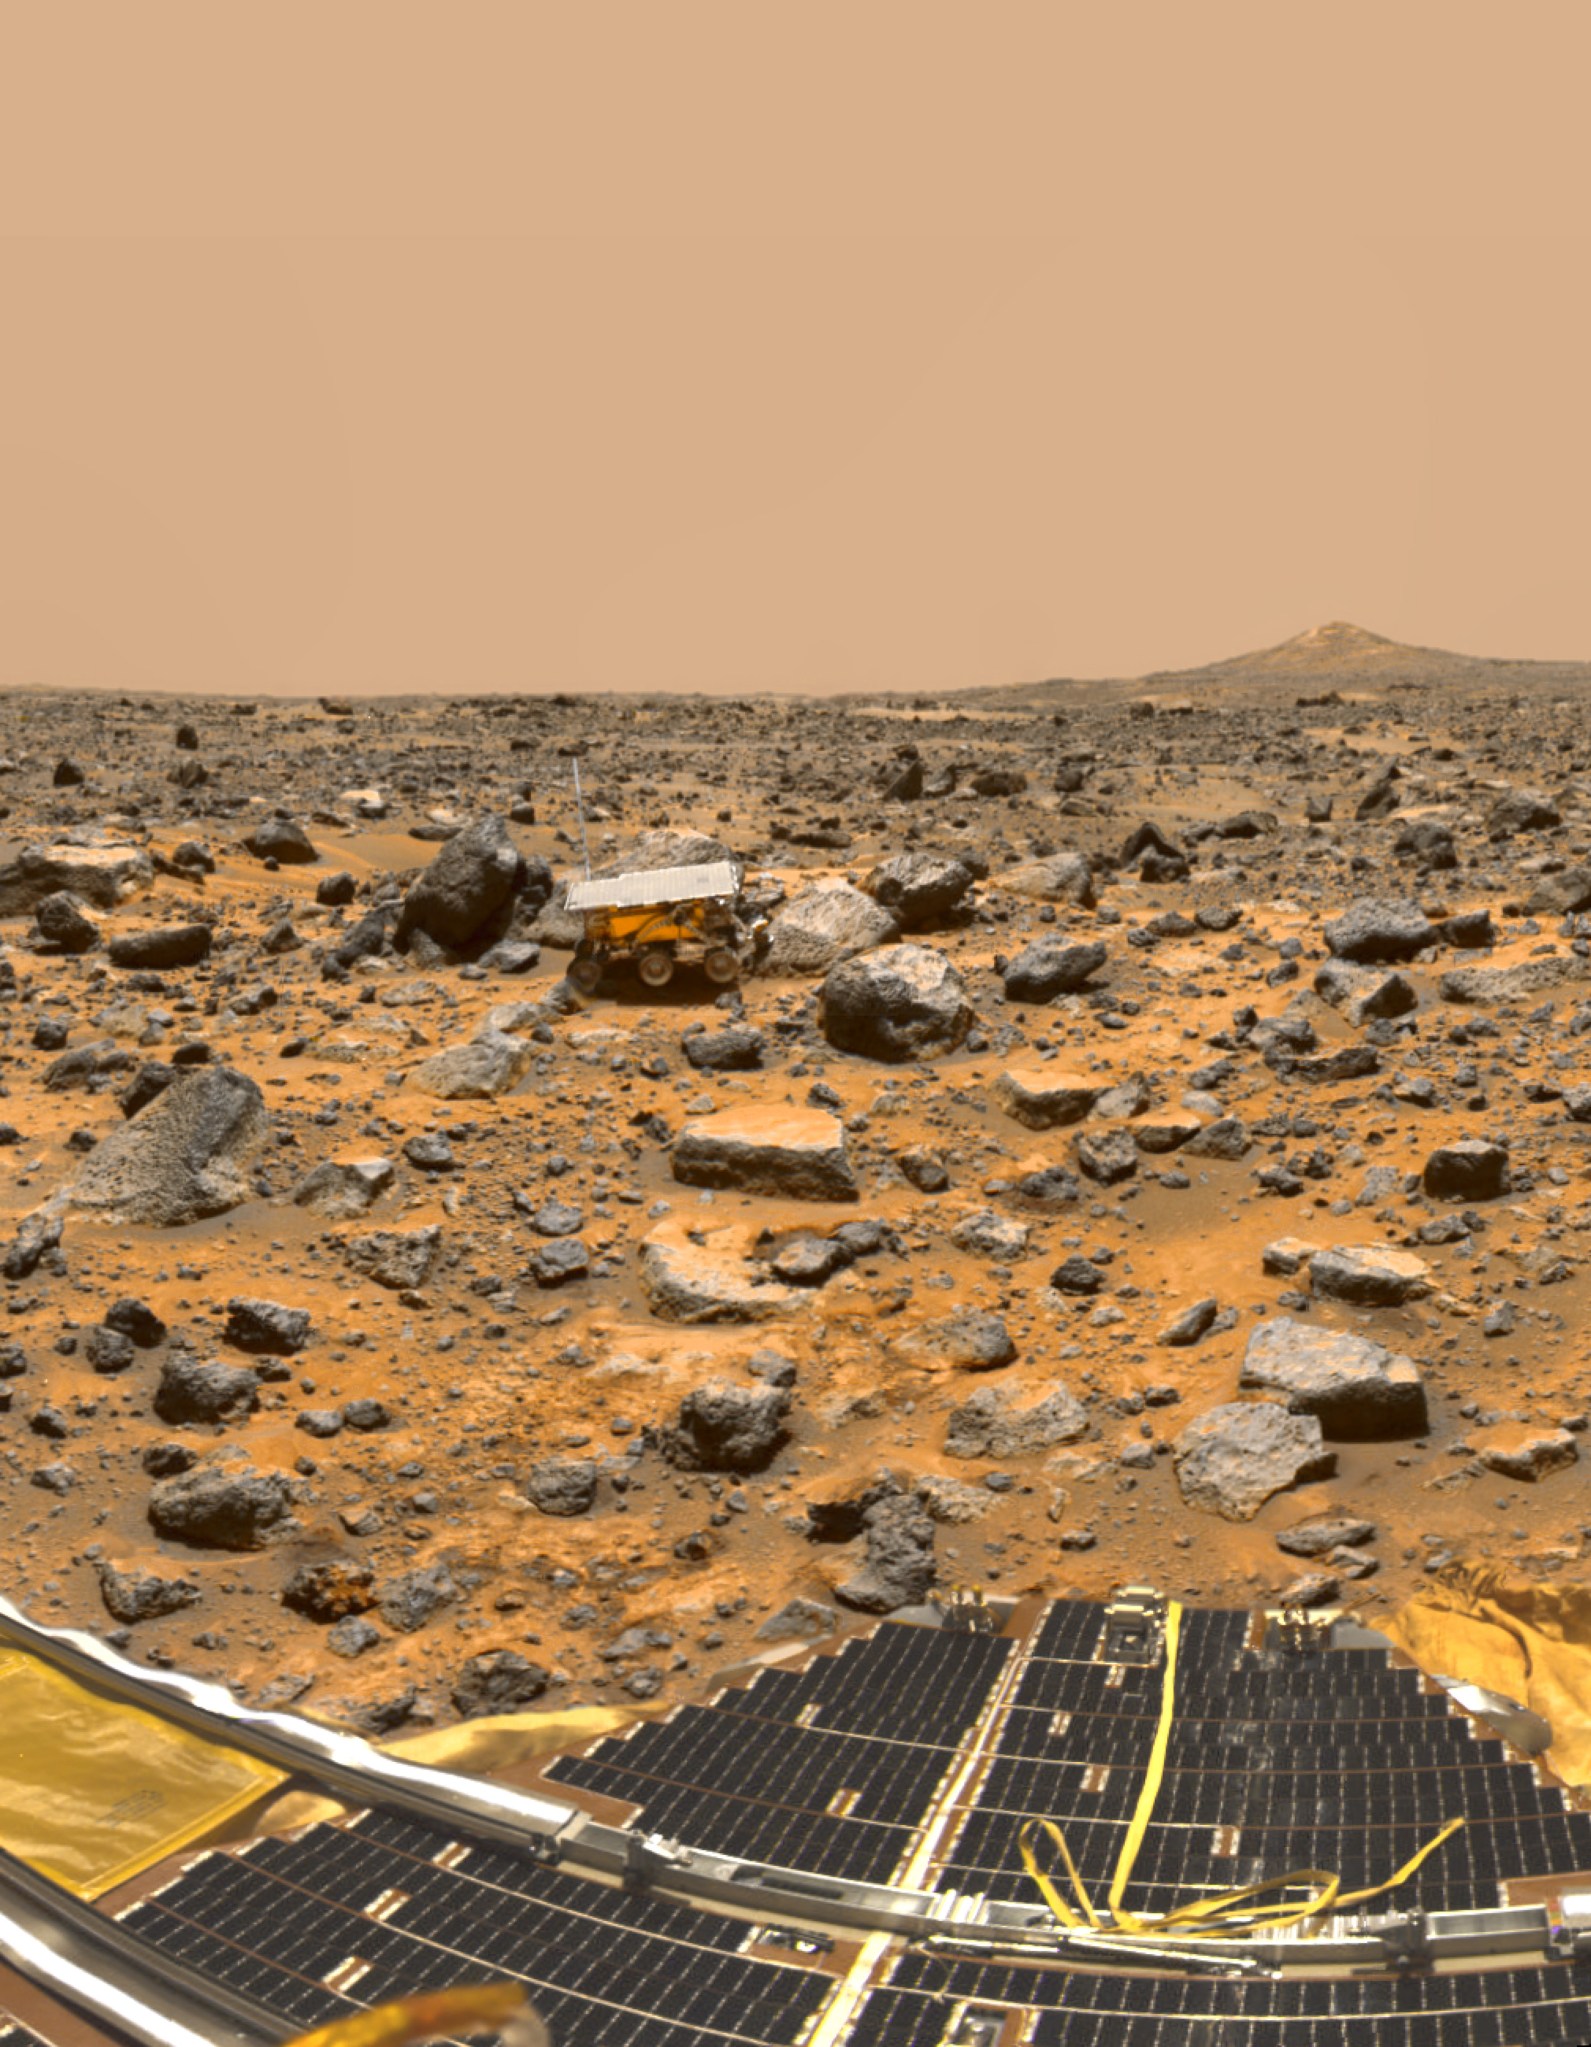 Pathfinder on Mars